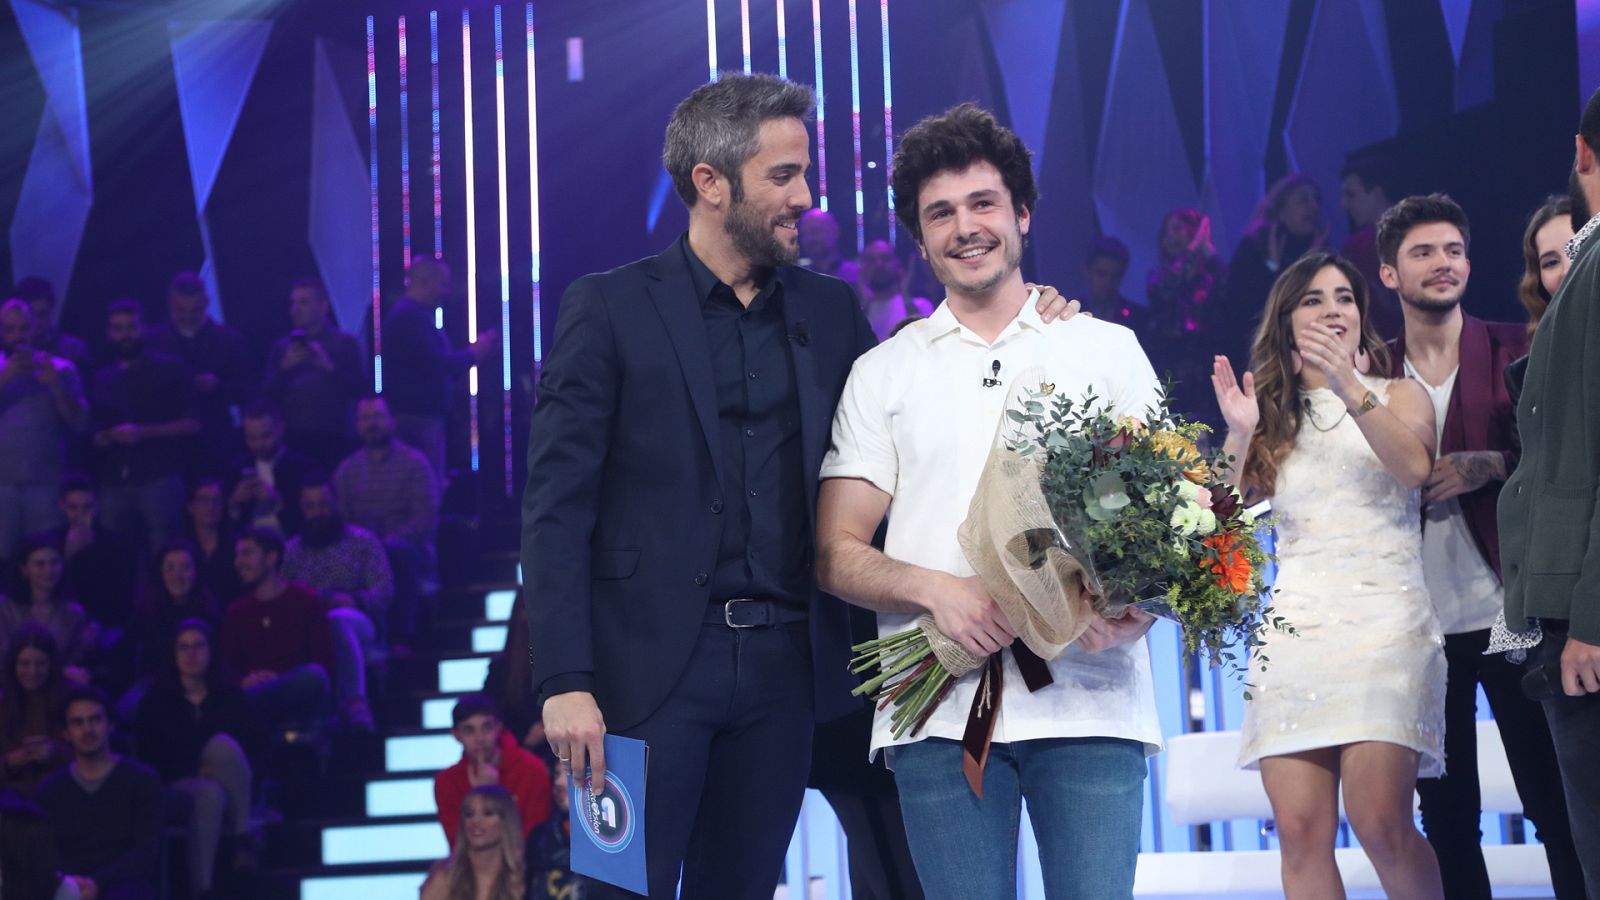 OT Eurovisión: "La venda" representará a España en Eurovisión 2019